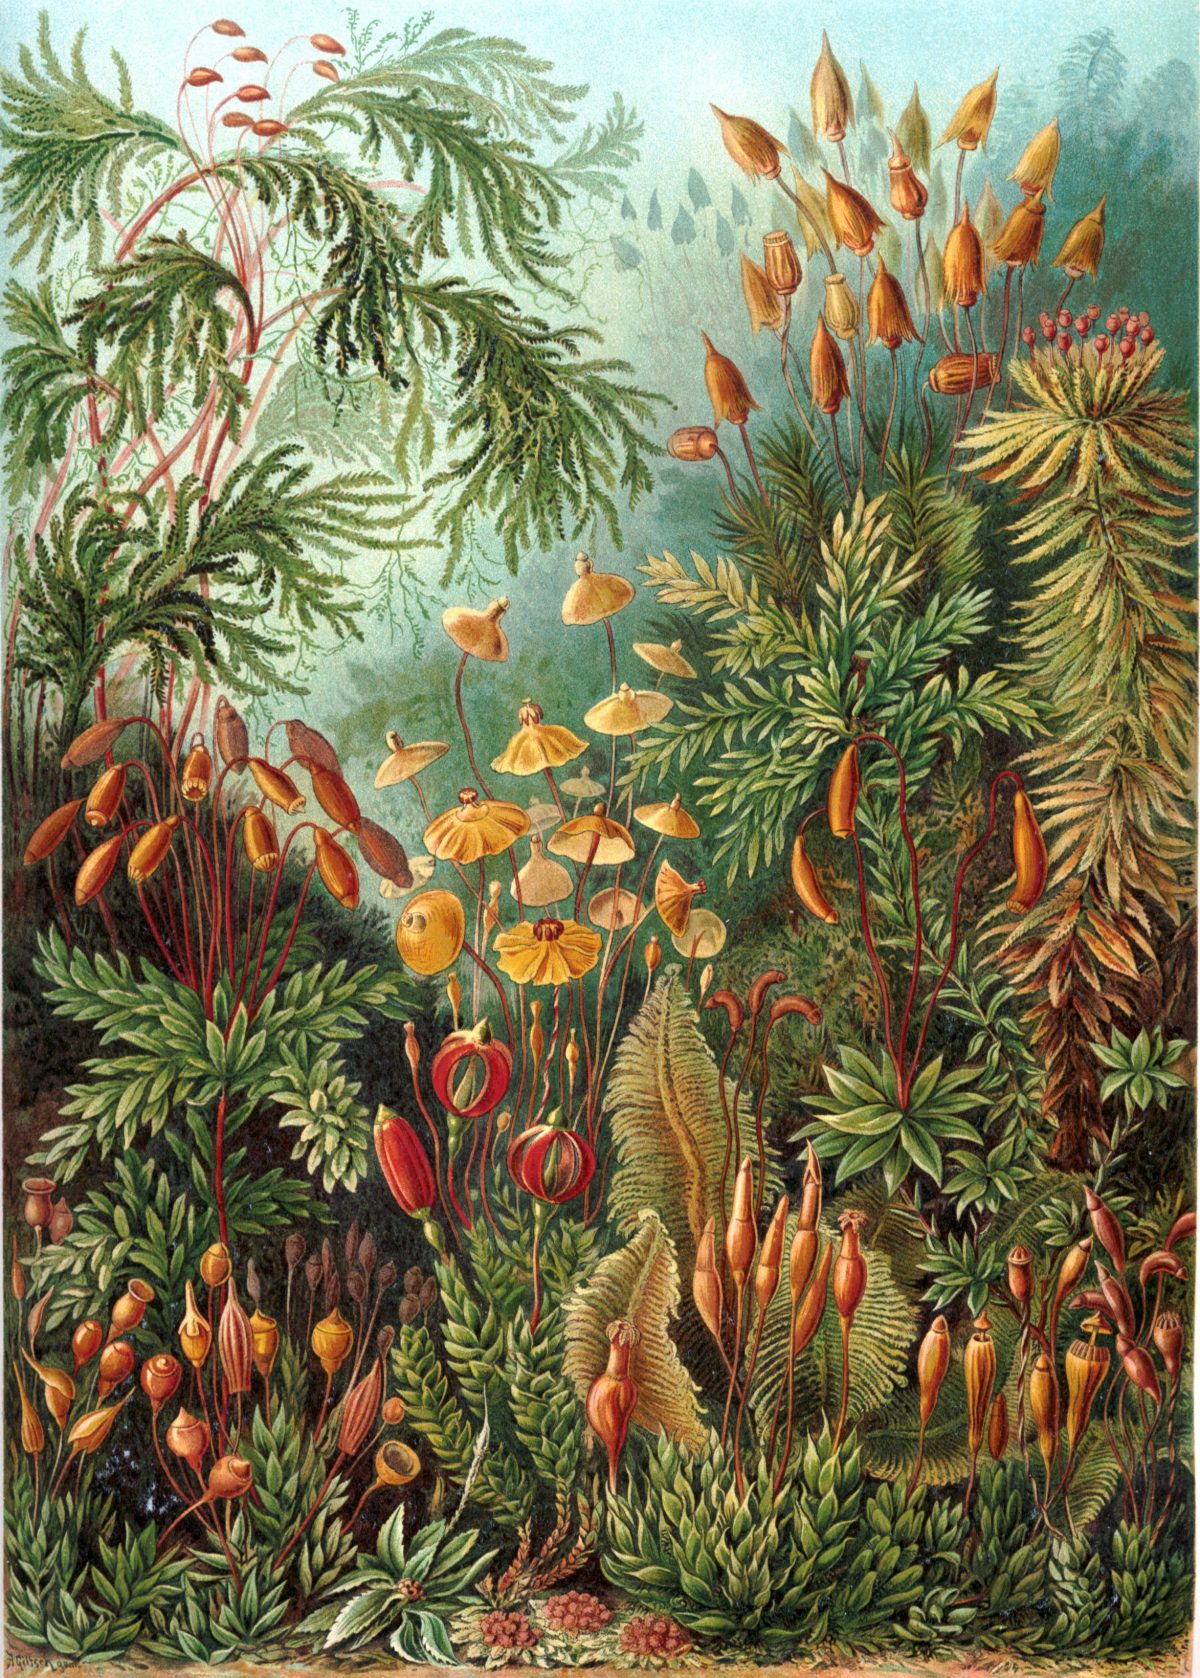 Ernst Haeckel - Kunstformen der Natur (1904), plate 72: Muscinae